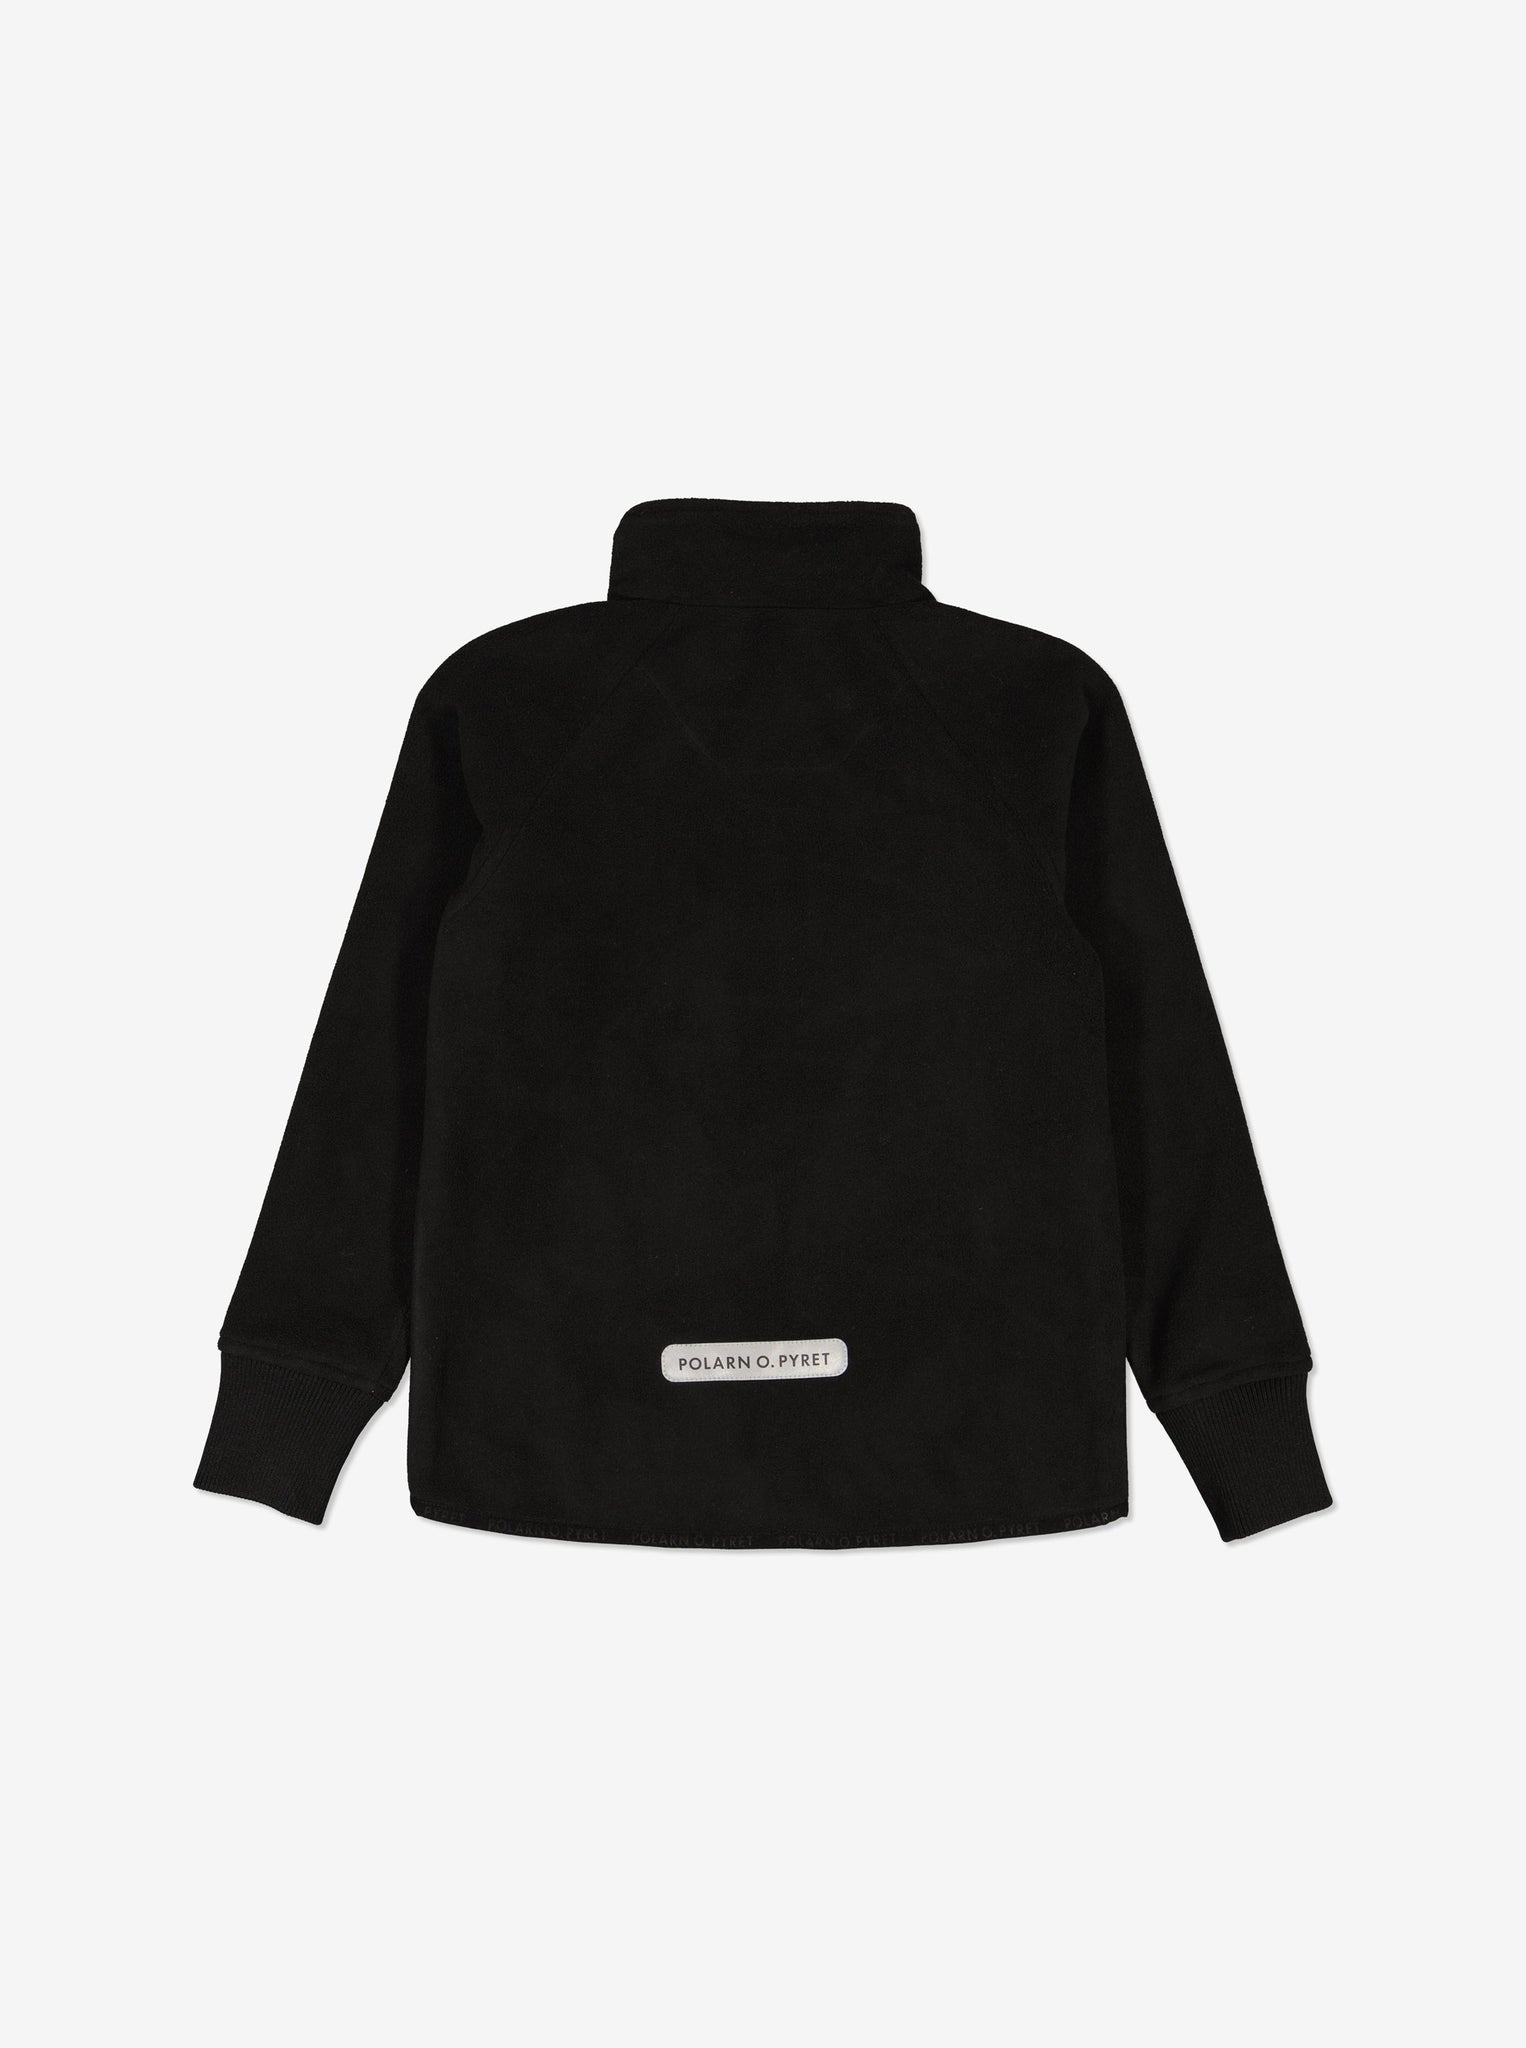 Kids Black Showerproof Fleece Jacket from Polarn O. Pyret Kidswear. Quality Kids Fleece Jacket